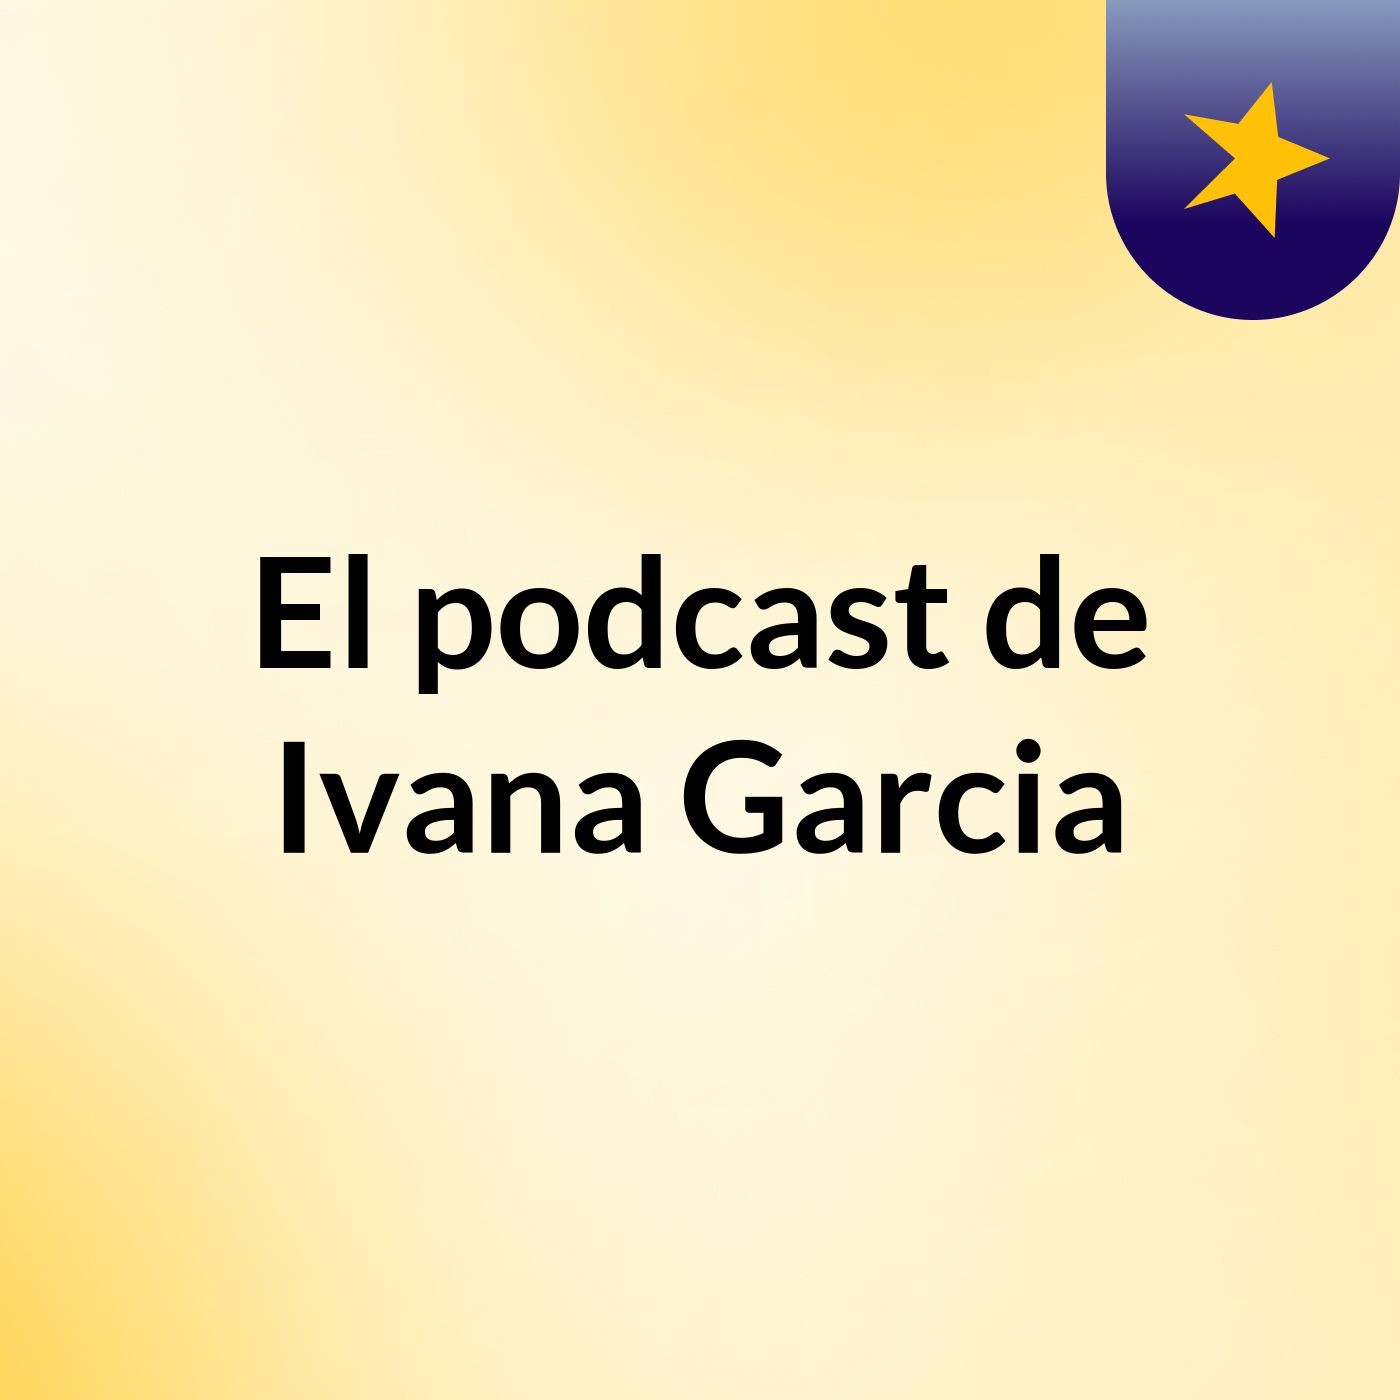 El podcast de Ivana Garcia